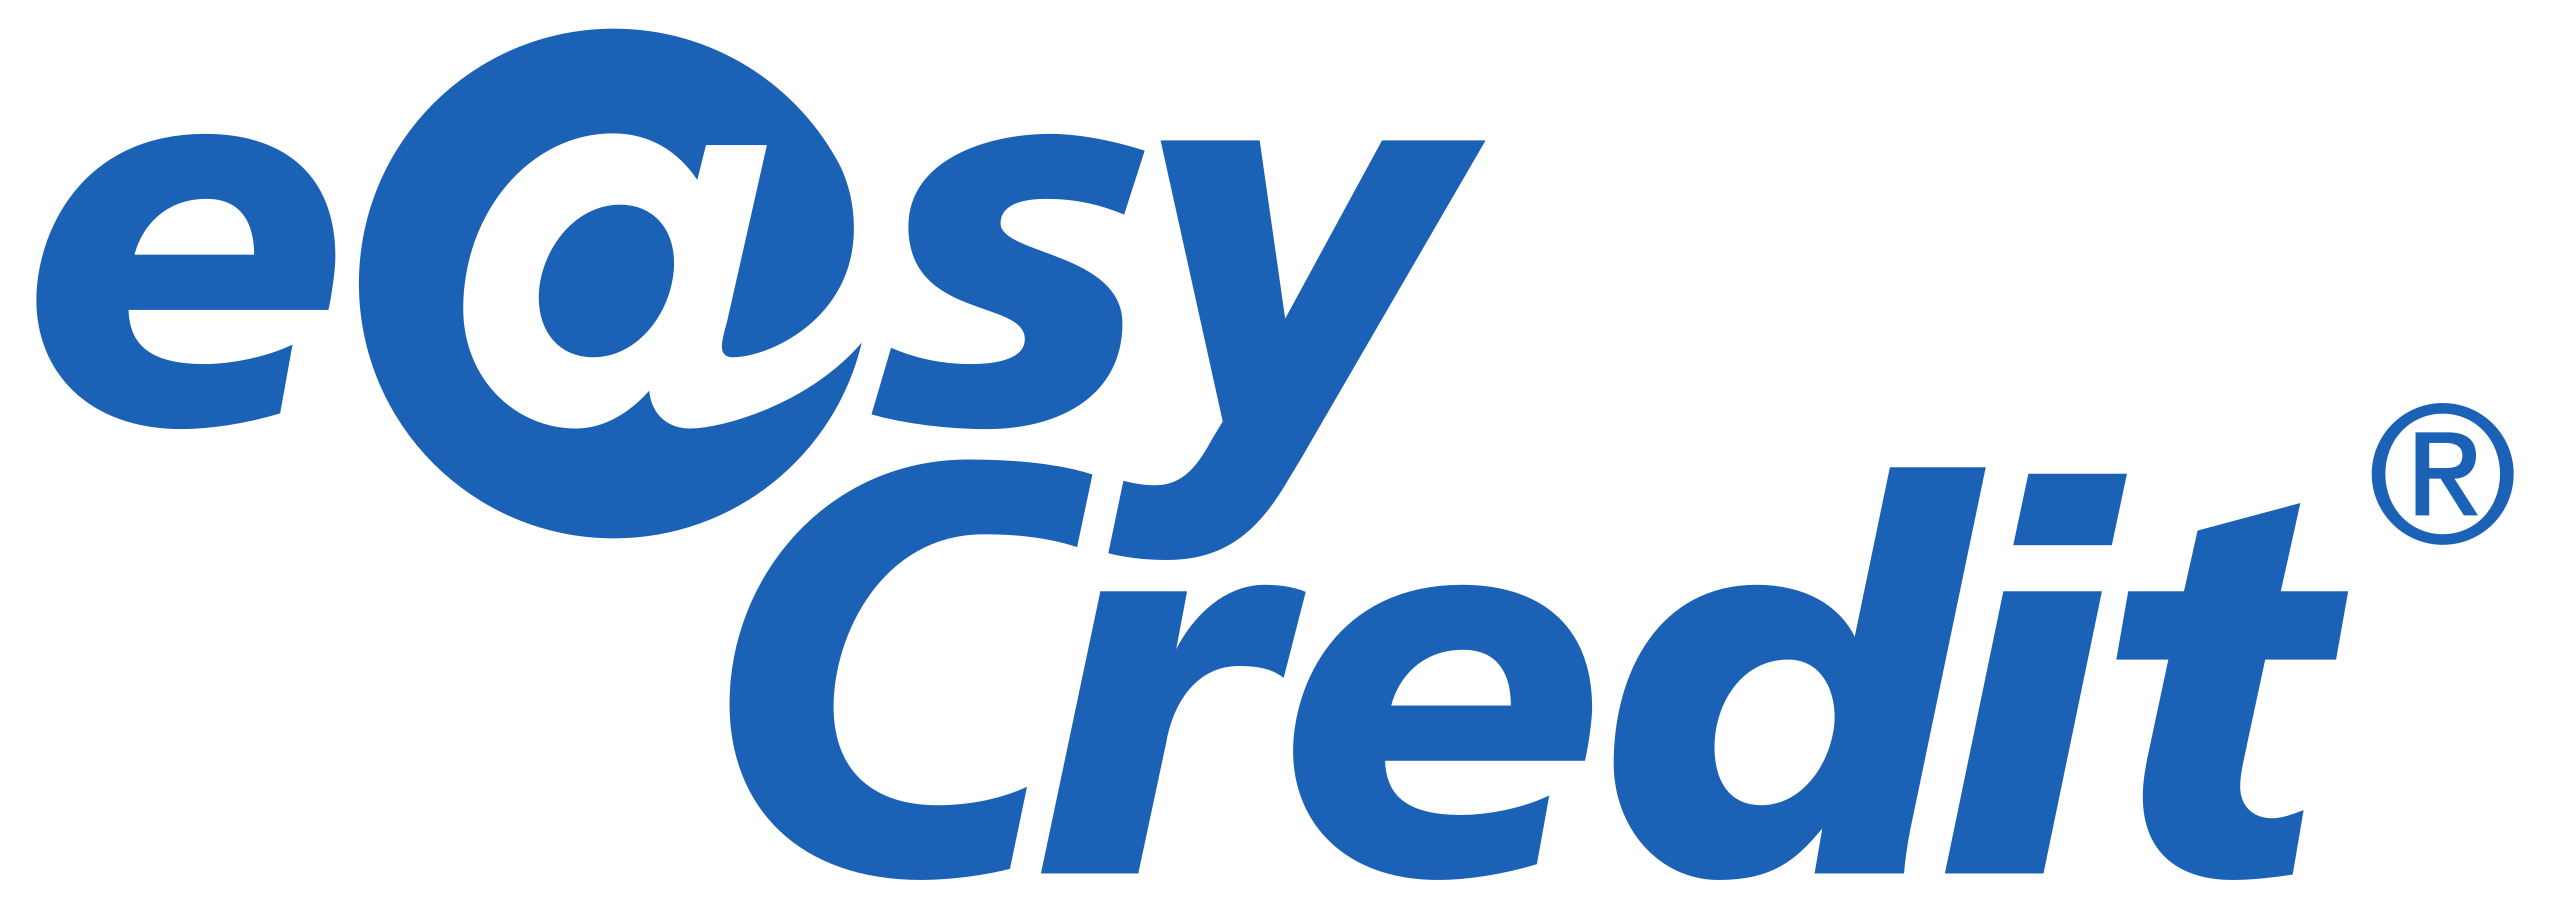 2560px-Easycredit-logo.svg